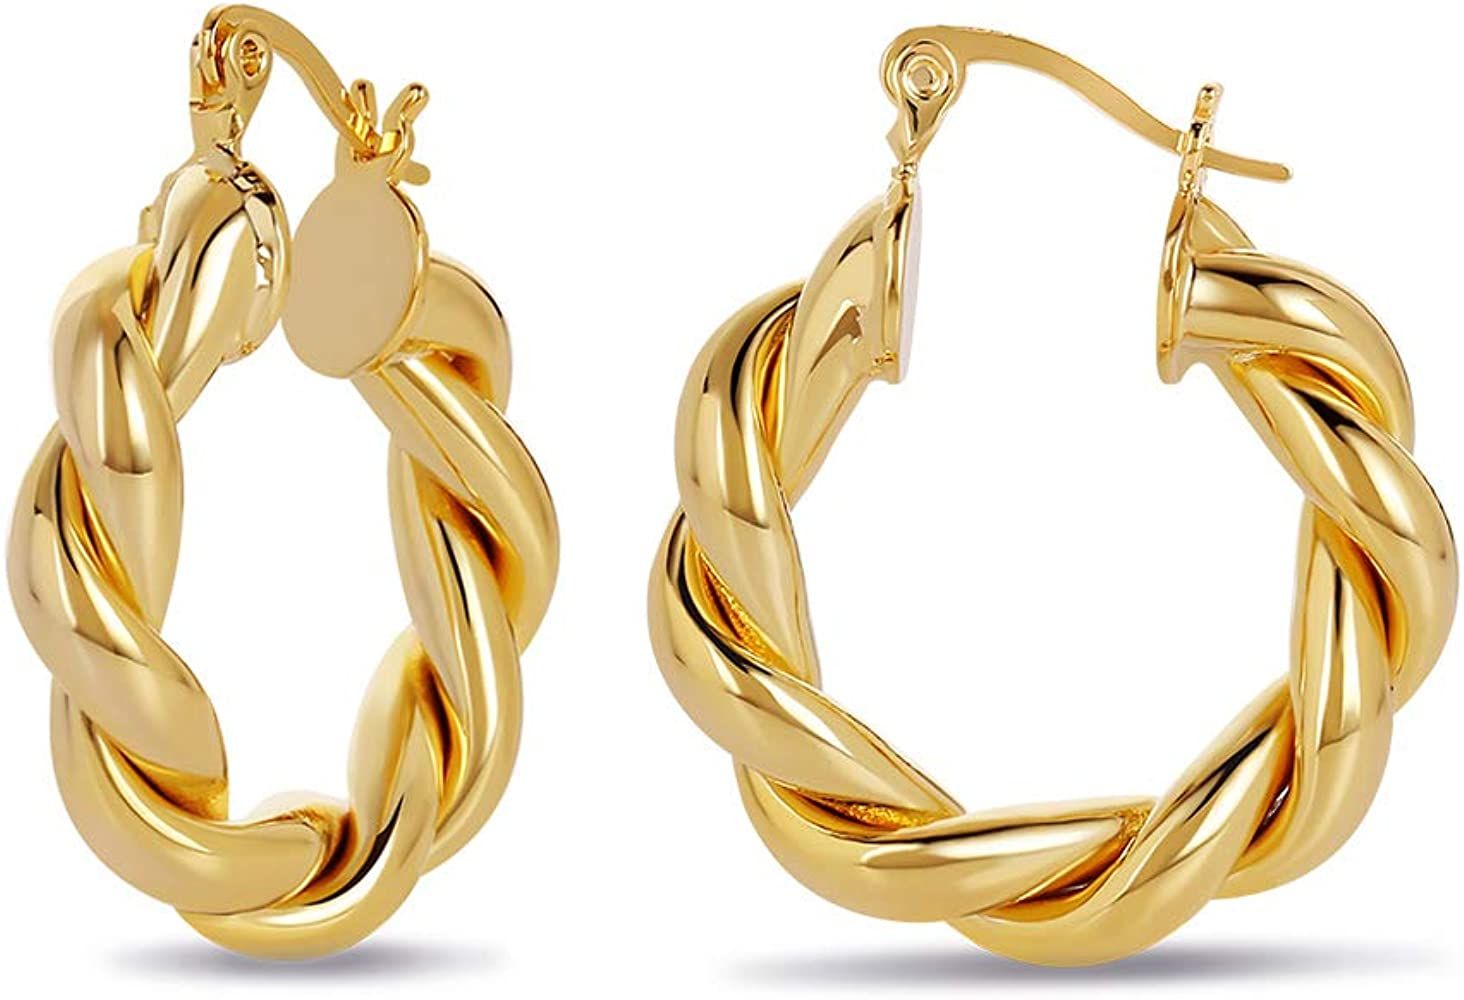 Twisted Chunky Hoop Earrings 14K Gold Plated Dainty Lightweight Hypoallergenic Open Hoops Earring... | Amazon (US)